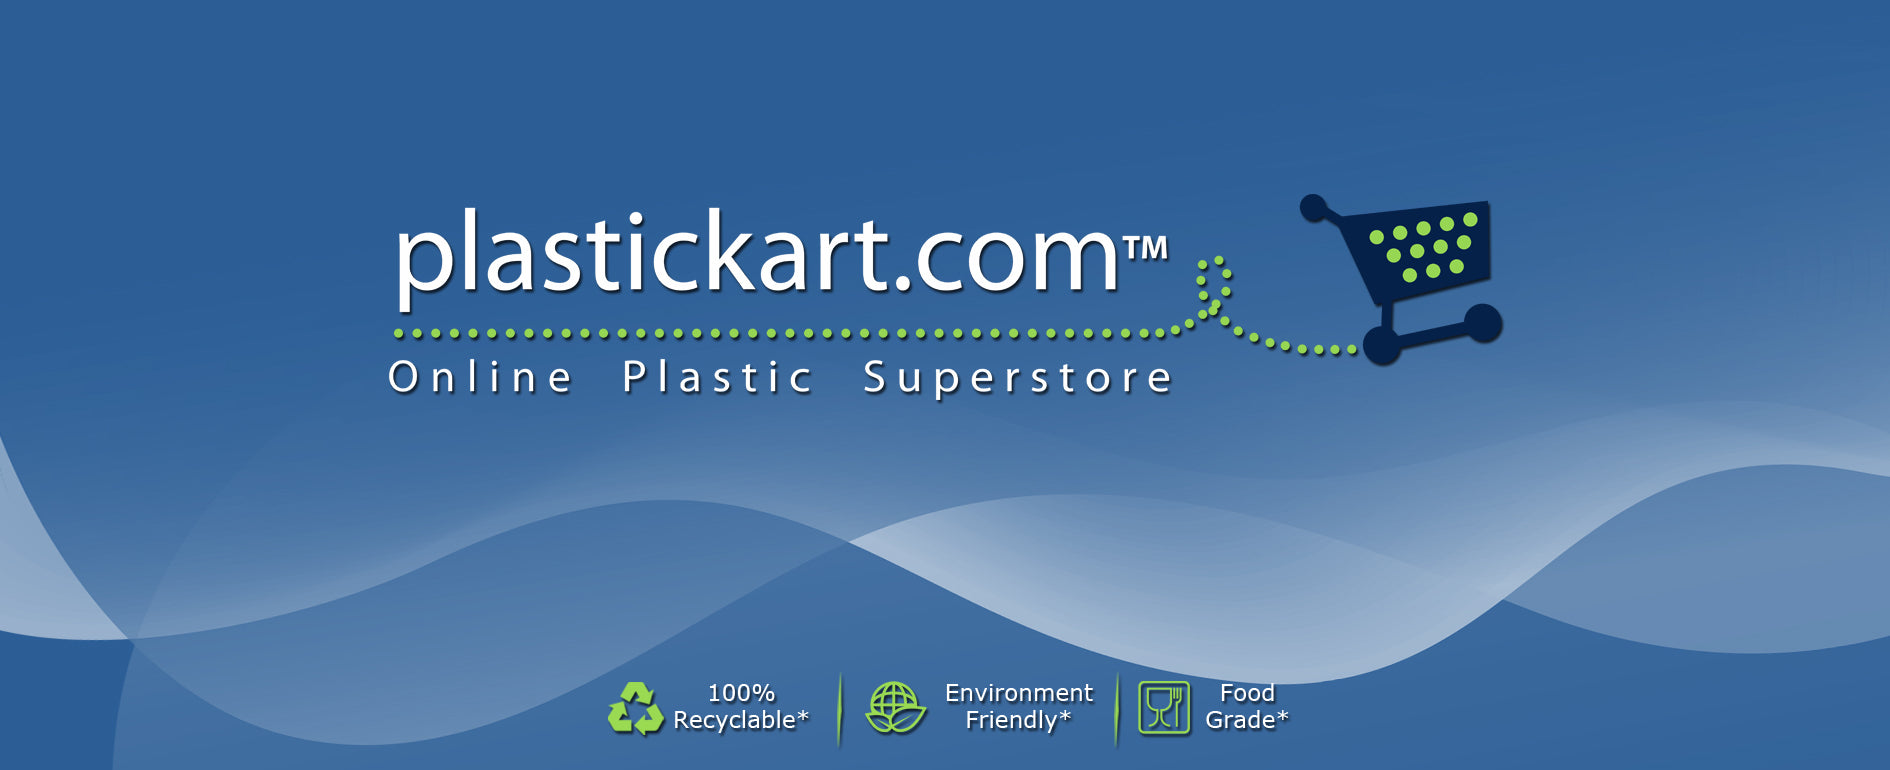 Plastickart.com